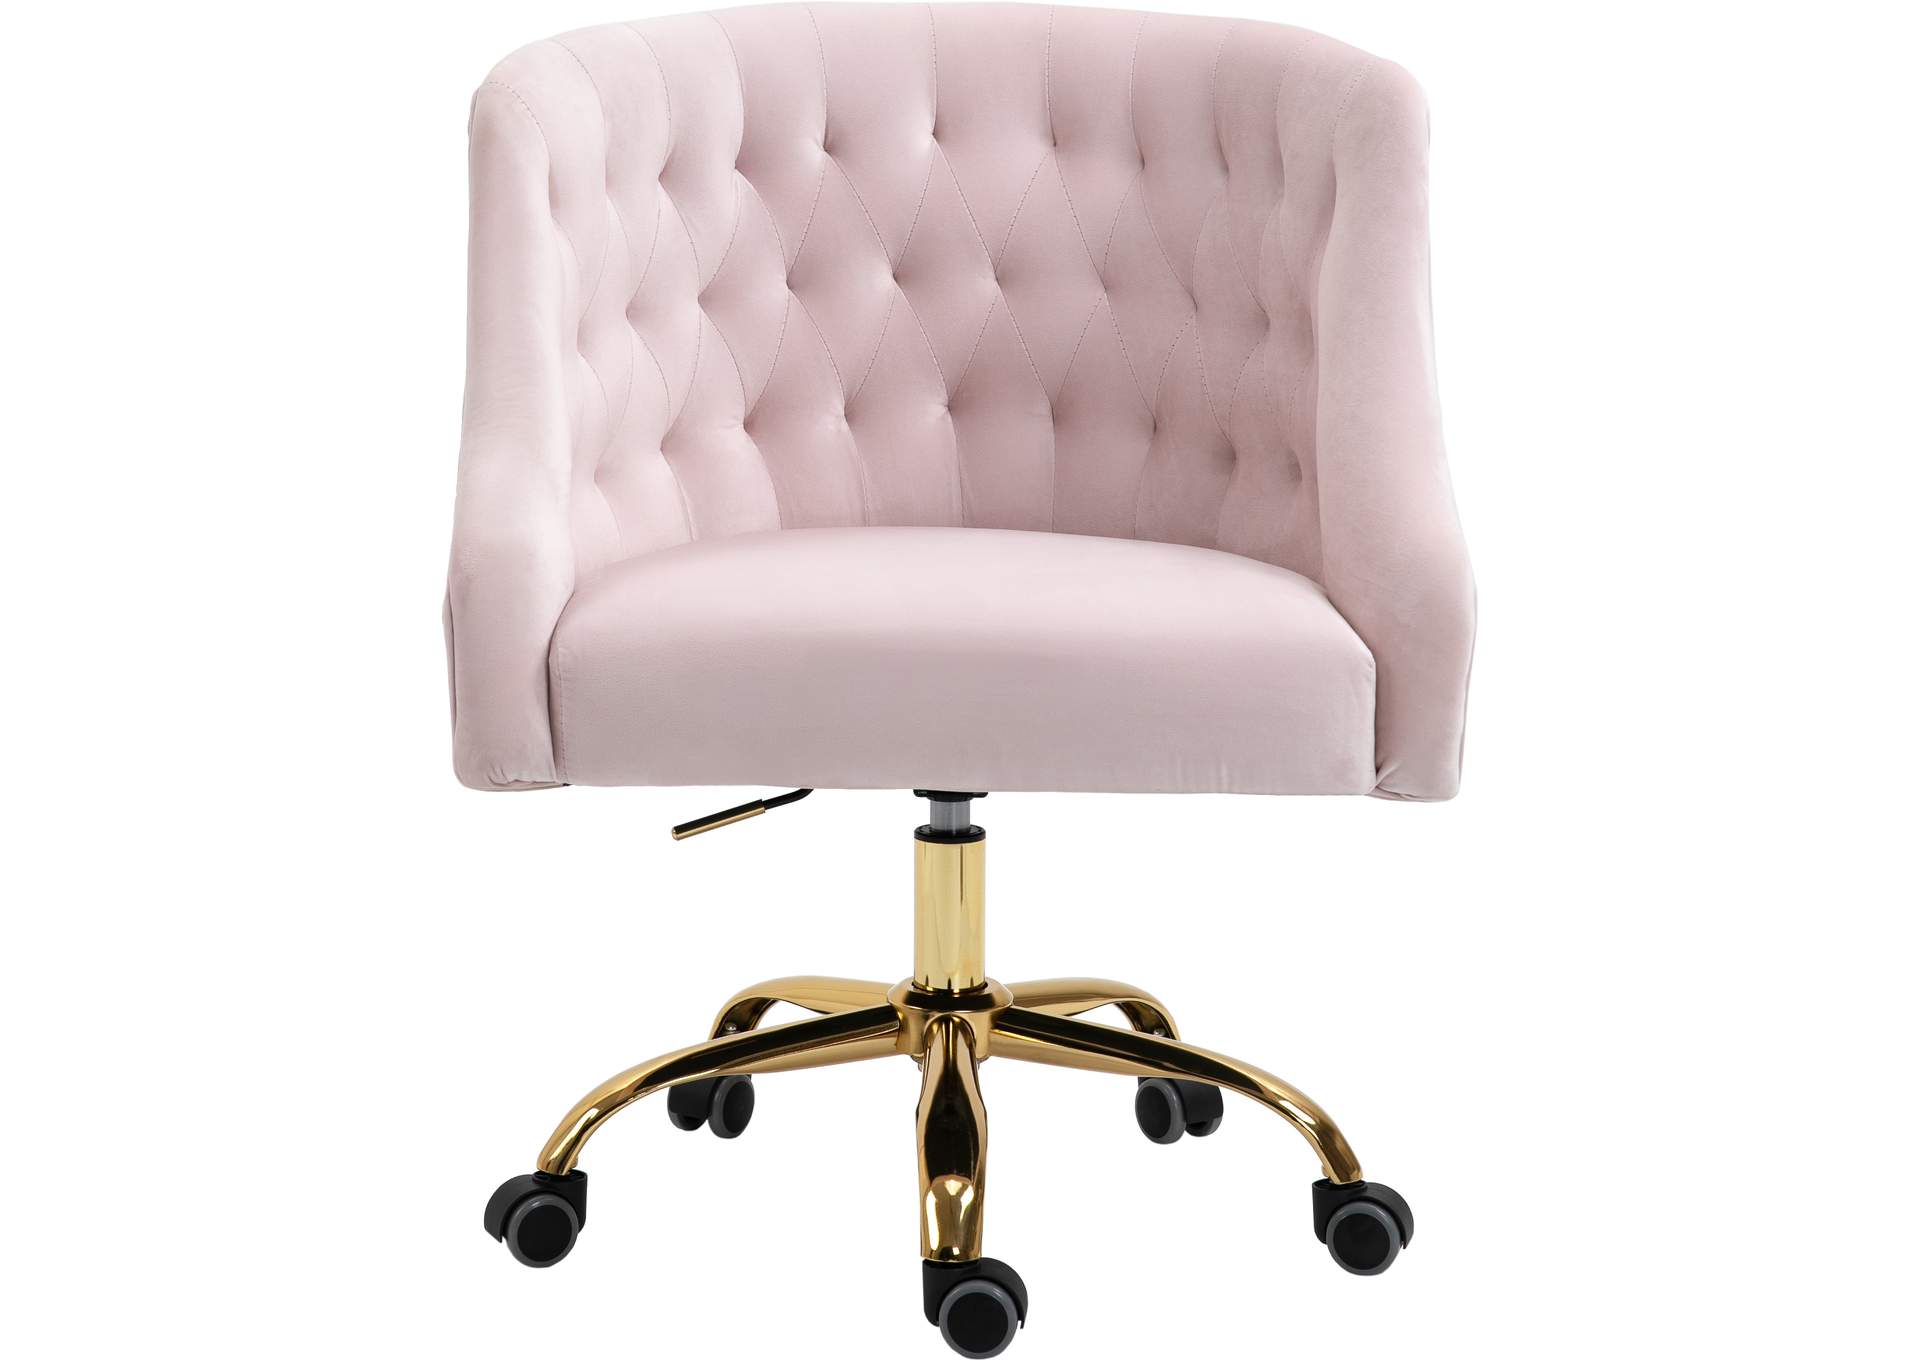 Pink Velvet Tufted Chair For Living Room